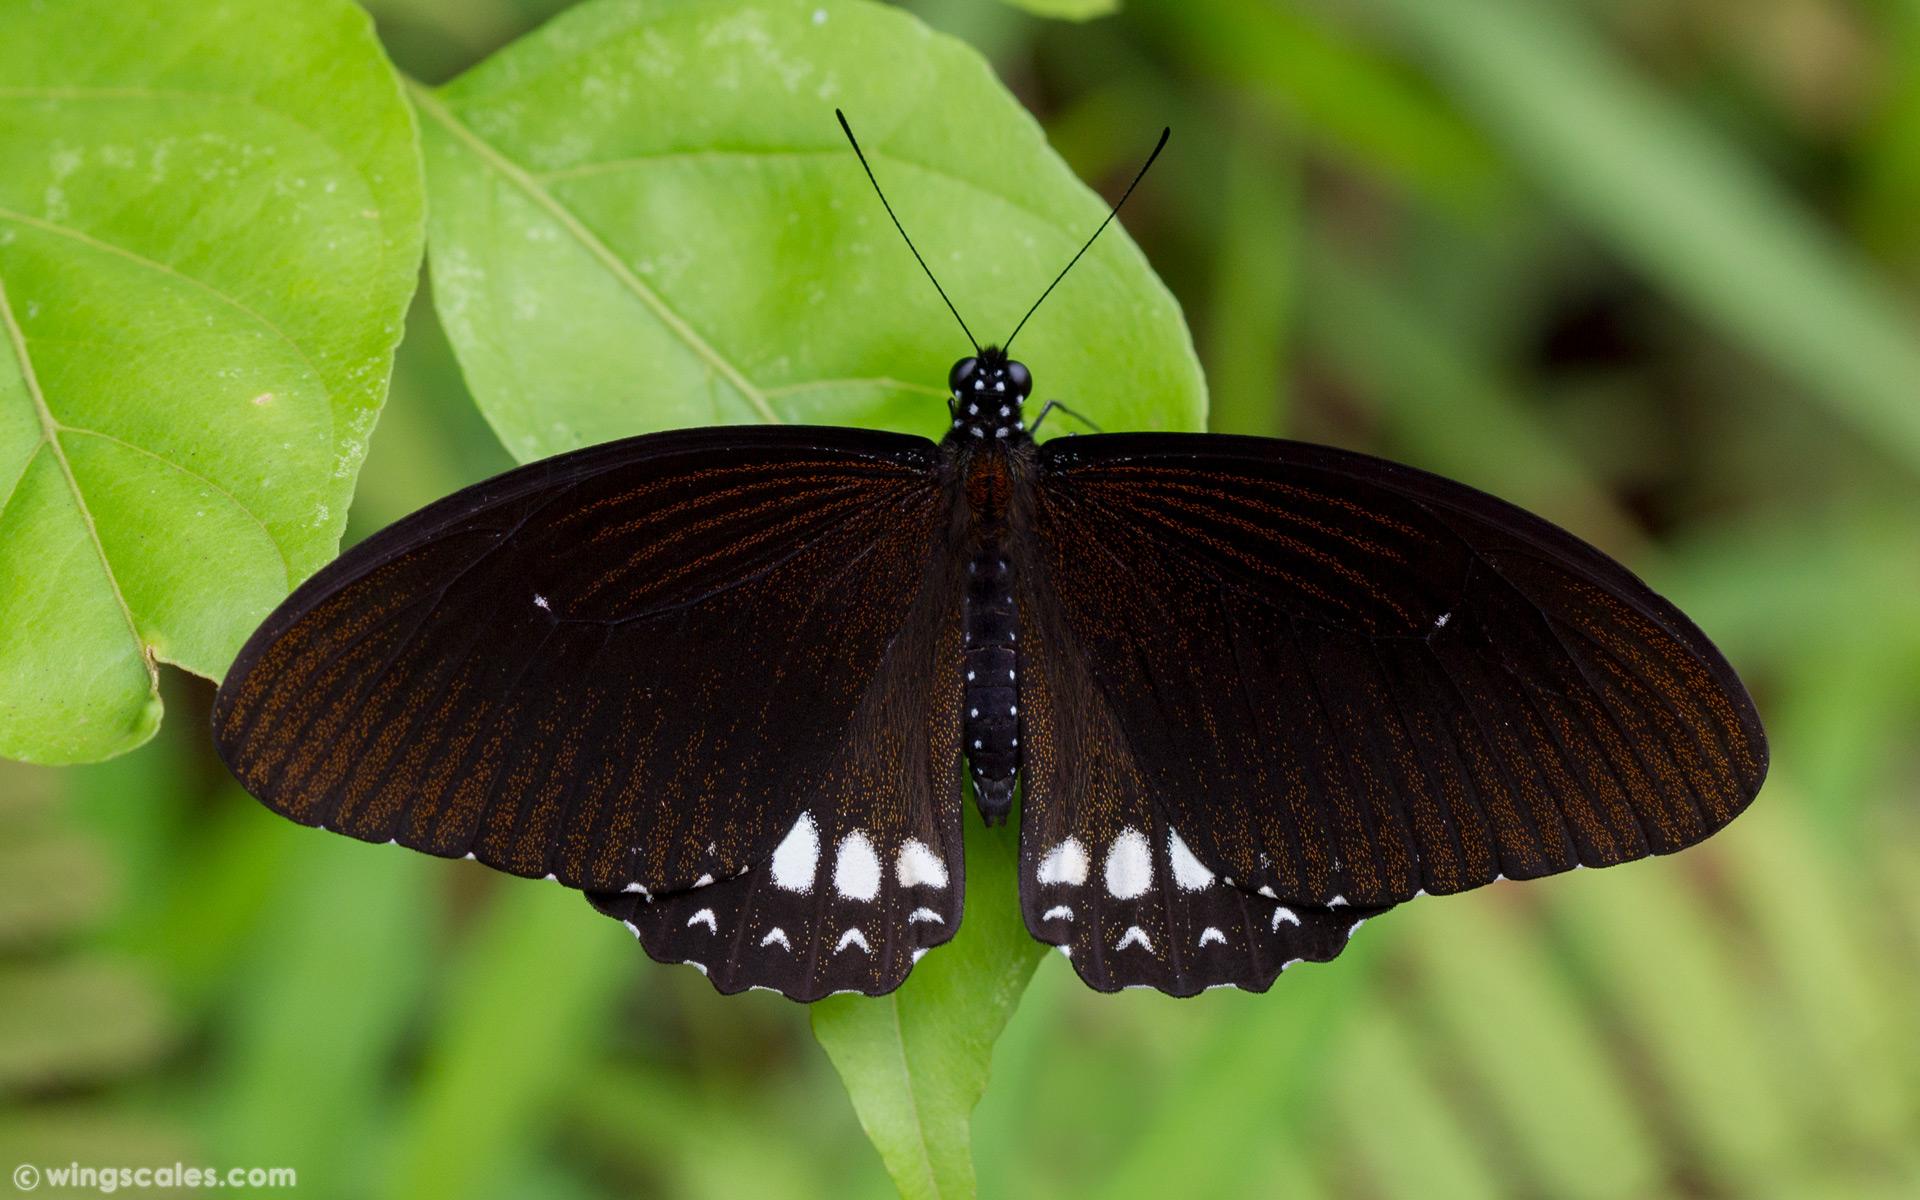 Papilio castor mahadeva : Siamese Raven / ผีเสื้อเชิงลายมหาเทพสยาม